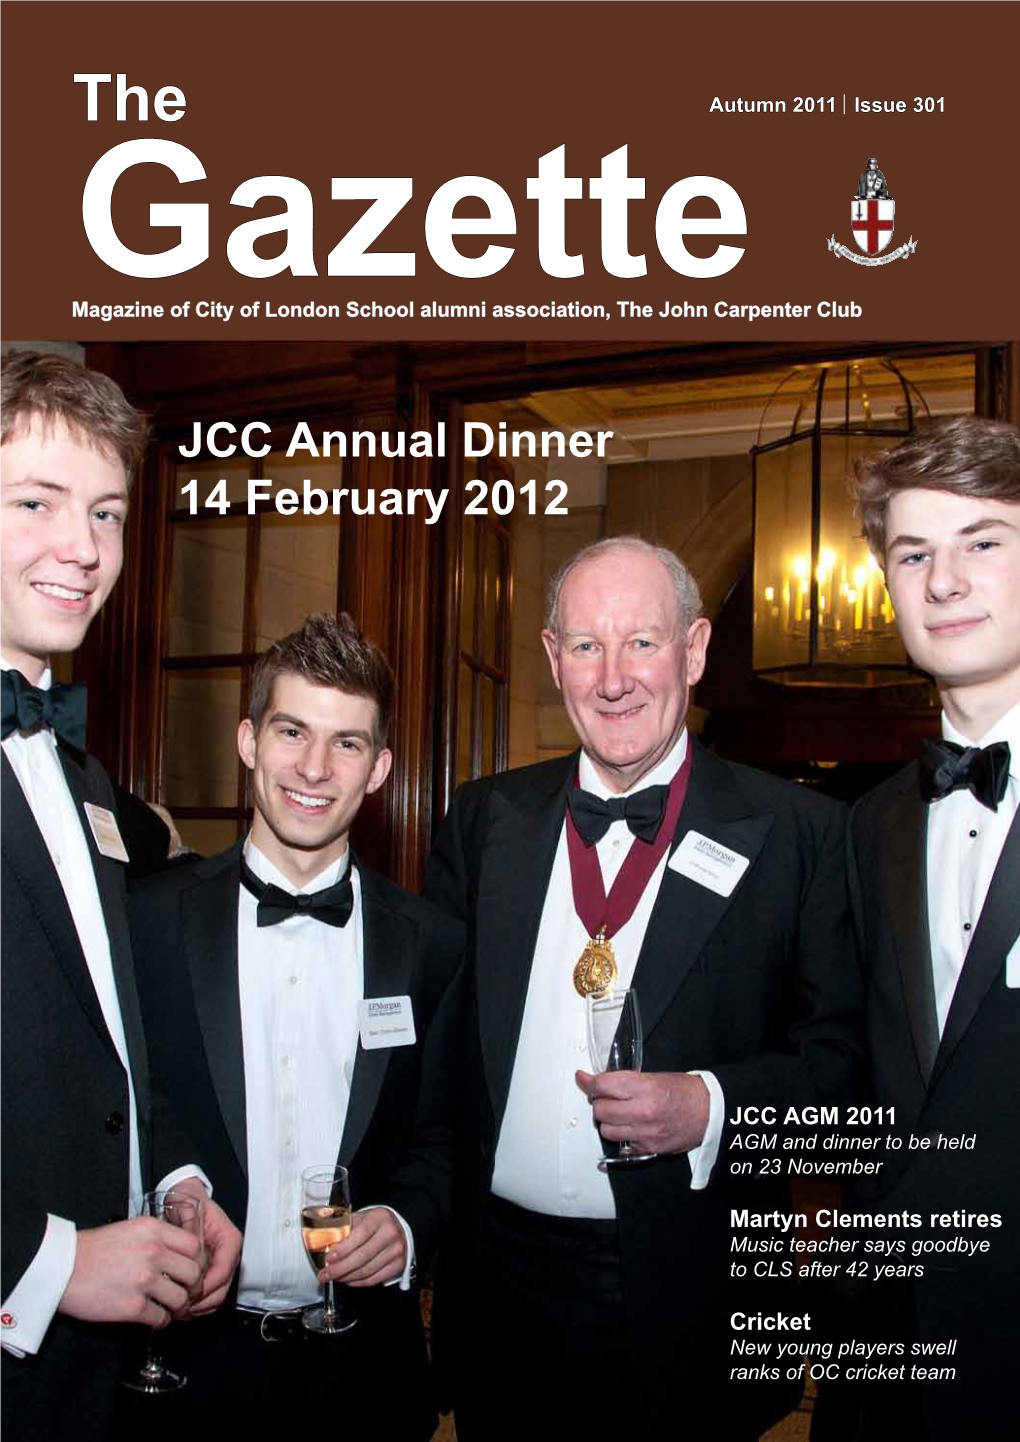 JCC Annual Dinner 14 February 2012